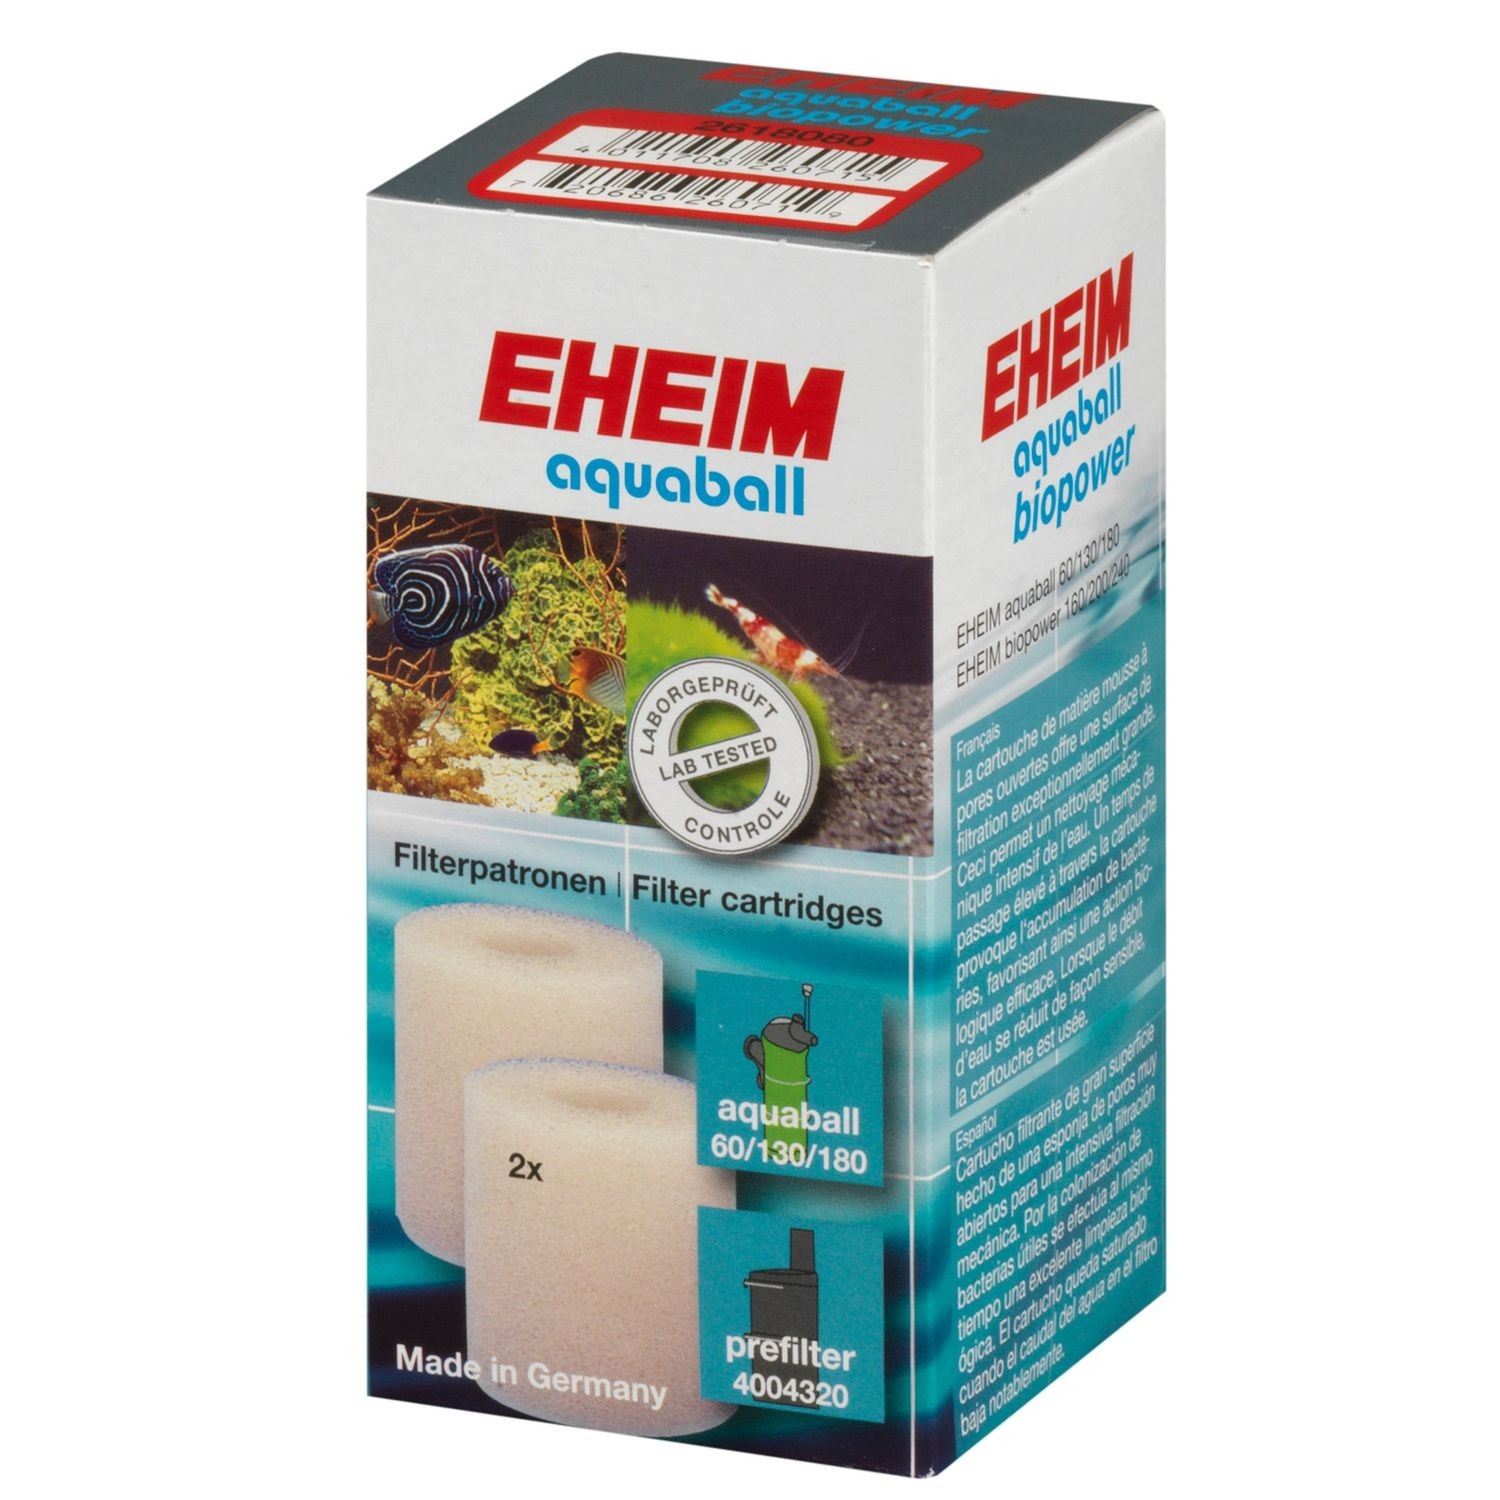 Filterpatroon voor EHEIM Aquaball 60 / 130 / 180 en Biopower 160 / 200 / 240 filters